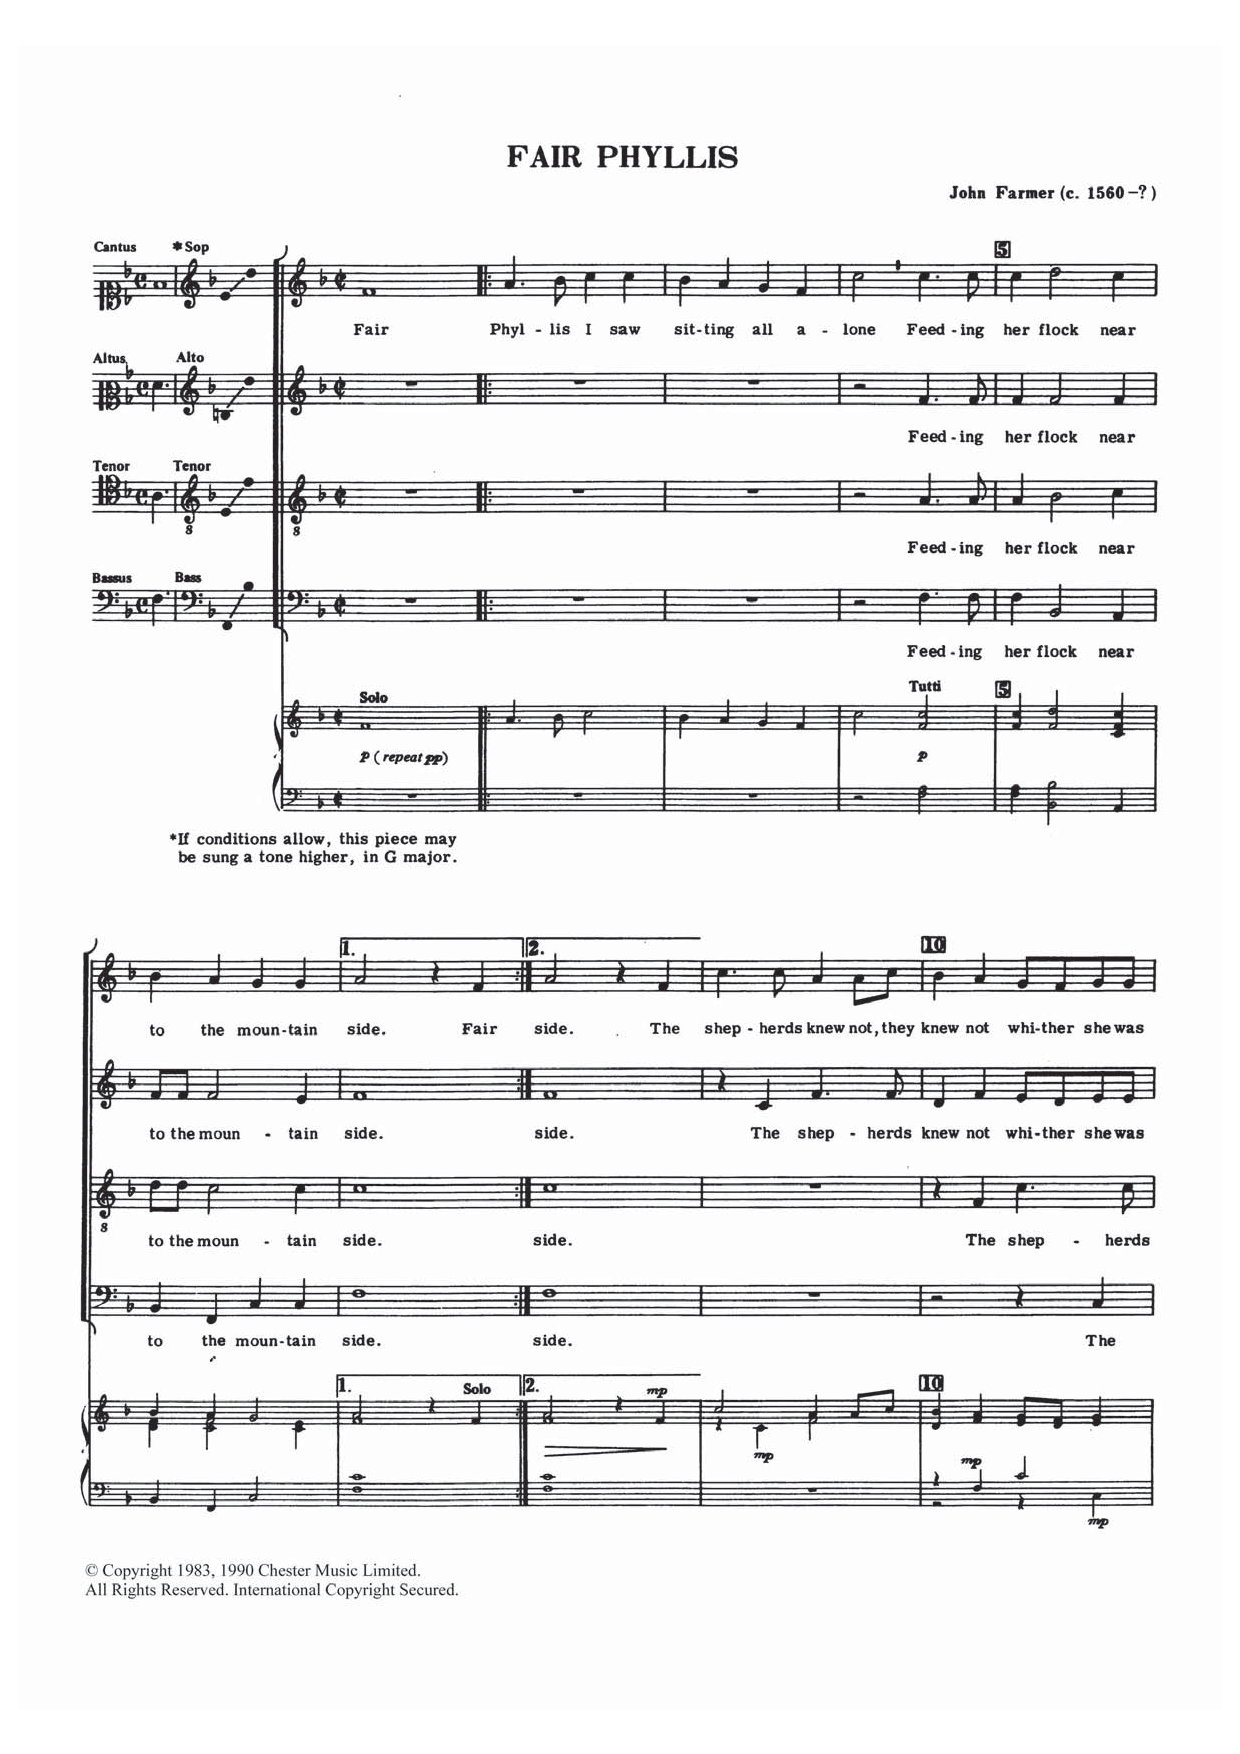 John Farmer Fair Phyllis Sheet Music Notes & Chords for Choir - Download or Print PDF